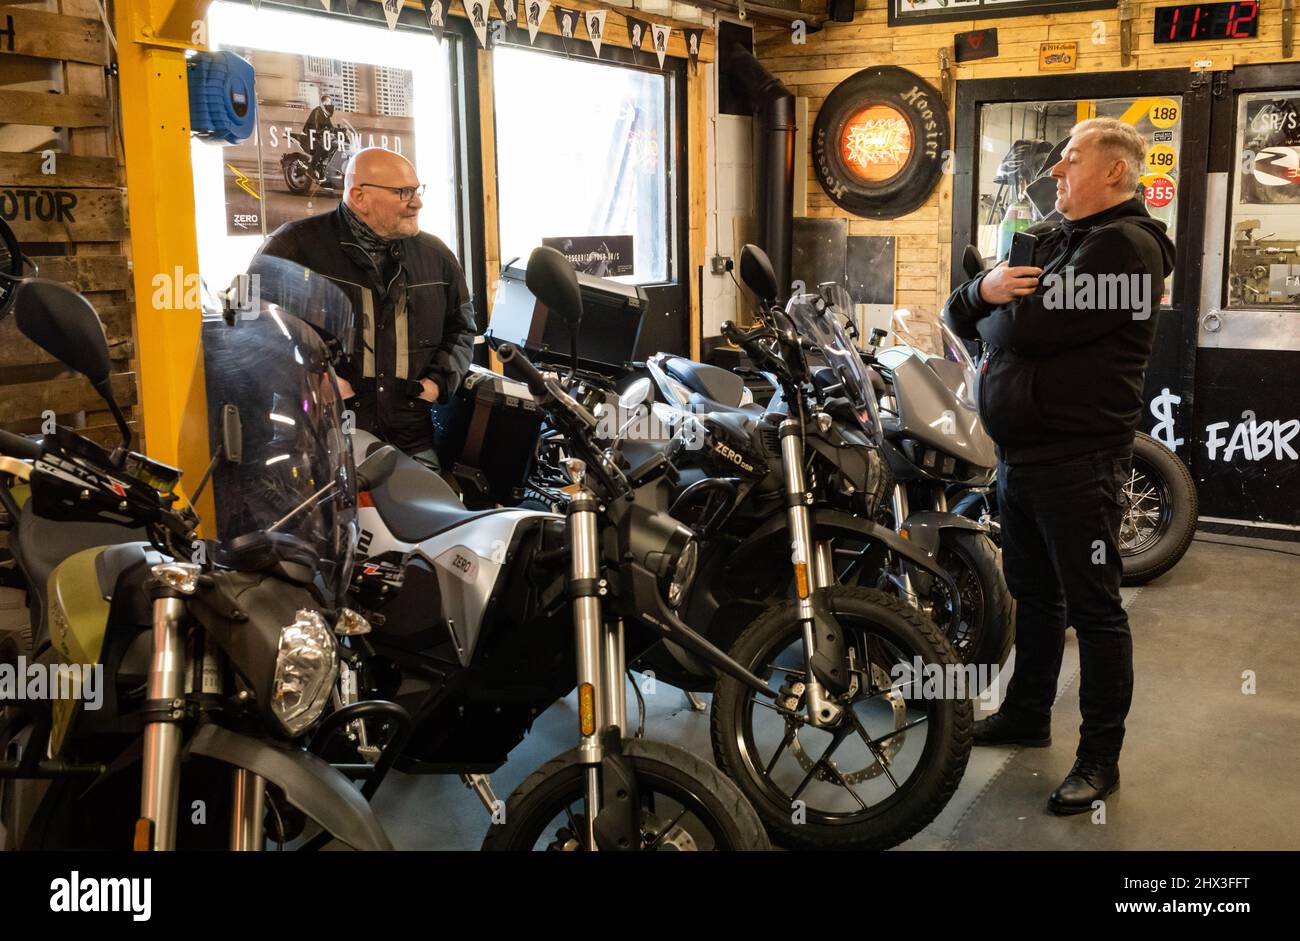 Deux passionnés de moto bavardes dans une salle d'exposition spécialisée dans les motos électriques. Banque D'Images